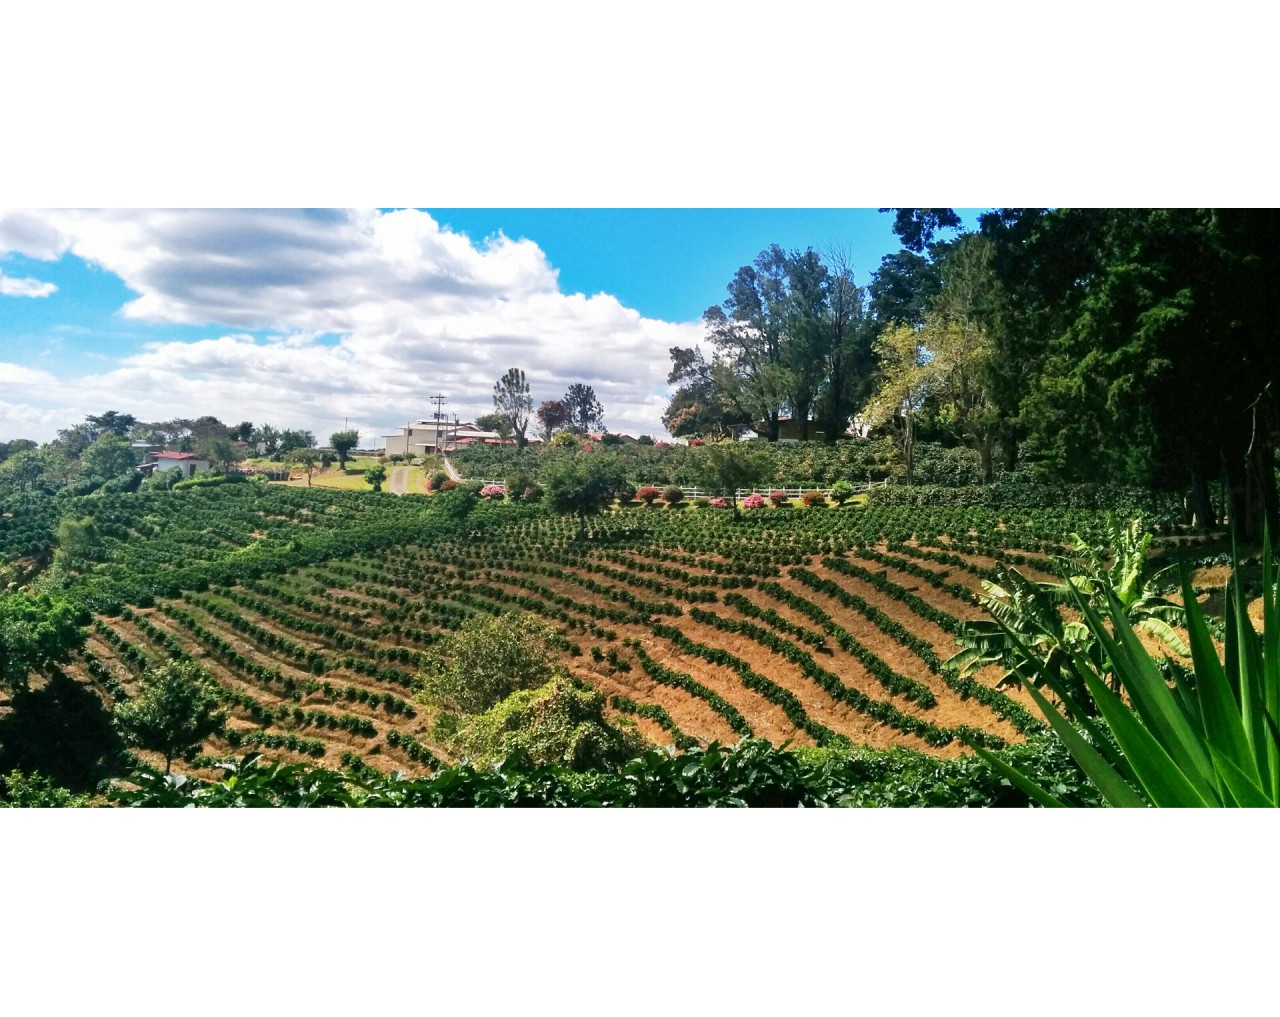 El Quizarra Micromill Jardin de Aromas - Costa Rica